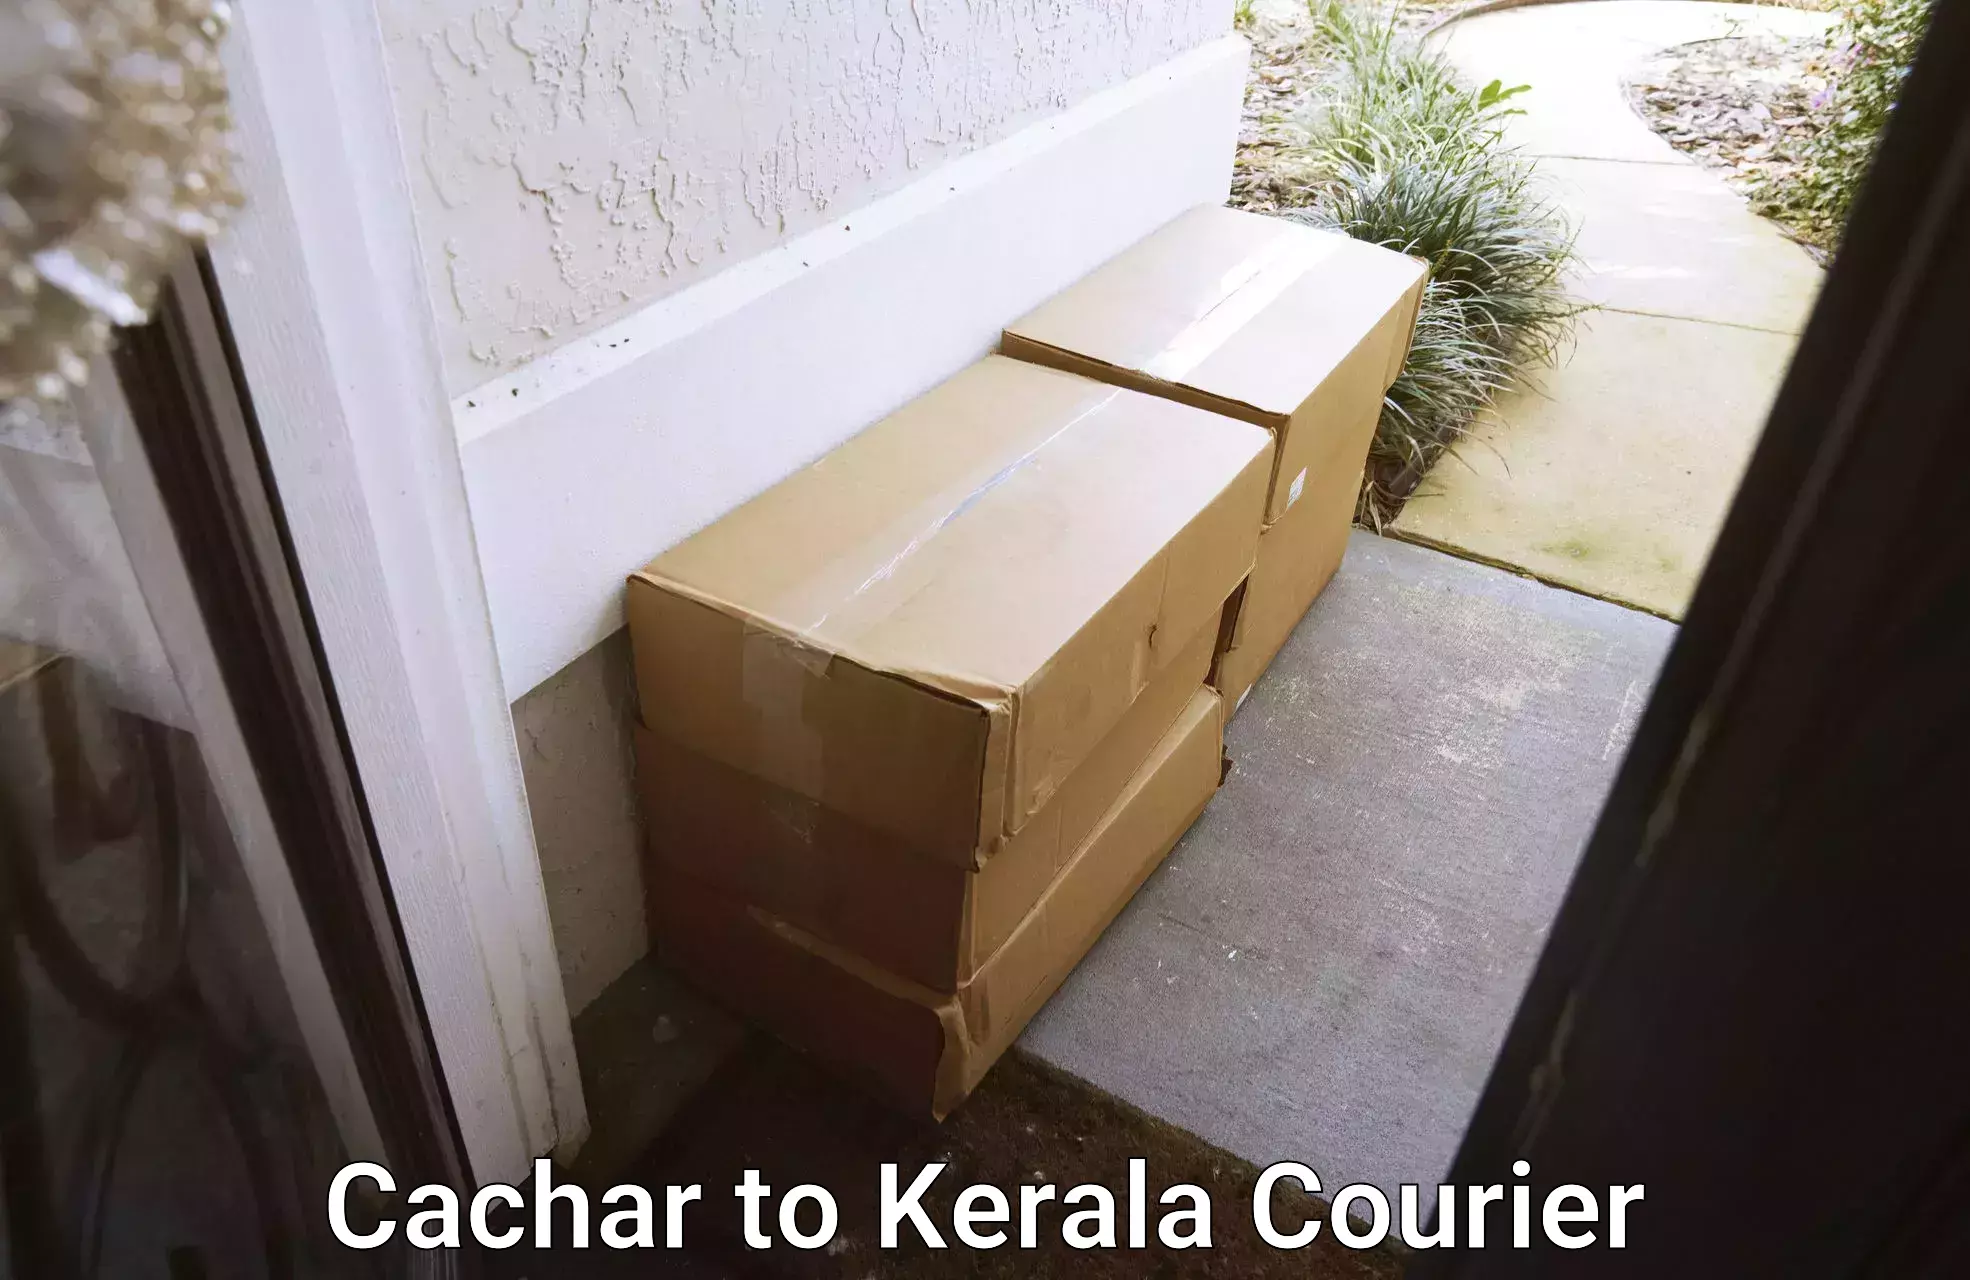 Tailored shipping plans Cachar to Thiruvananthapuram